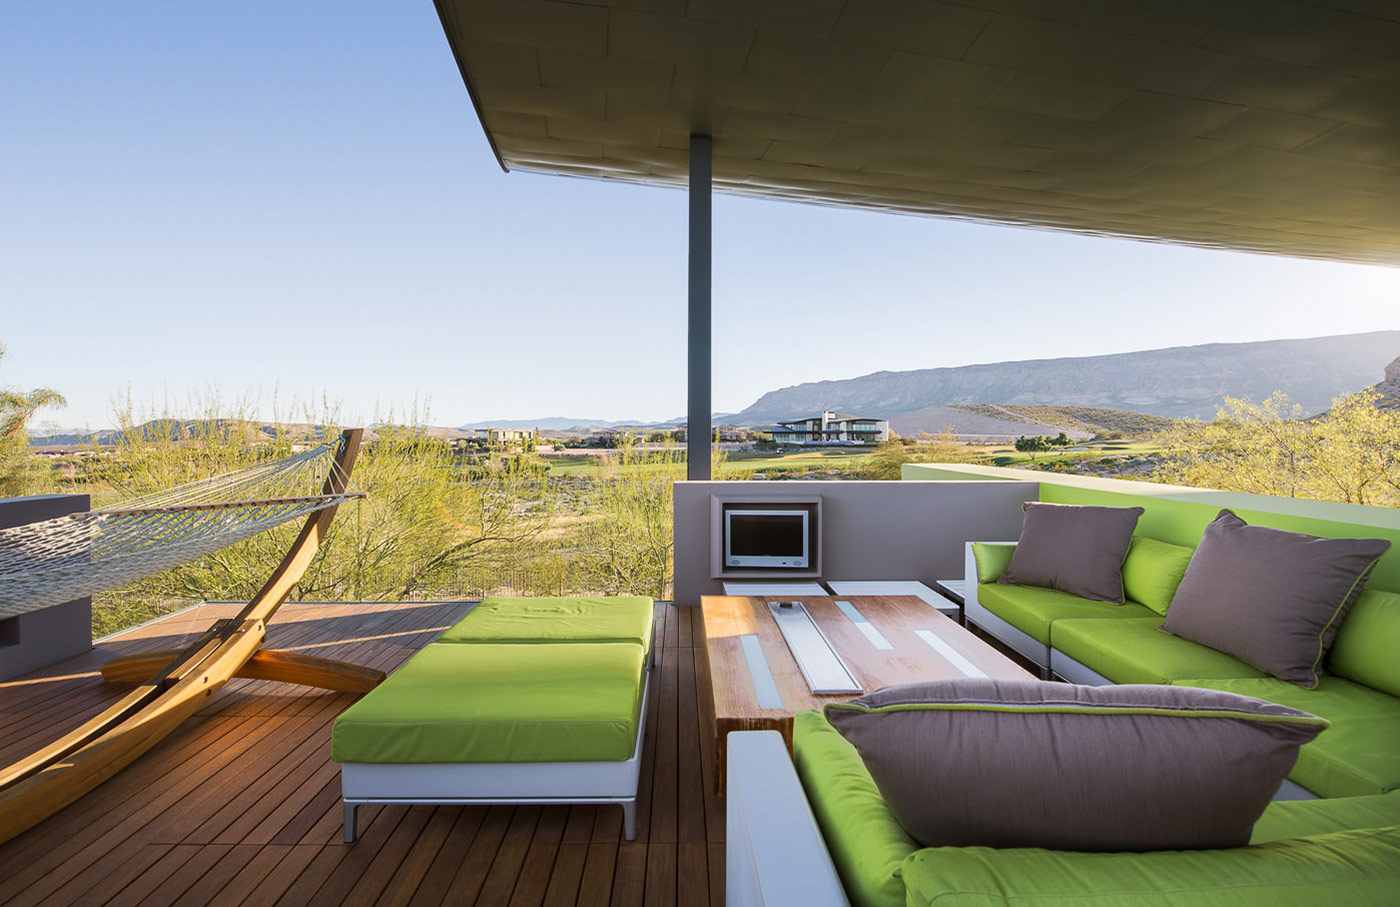  design ideas-outdoor Terrace 